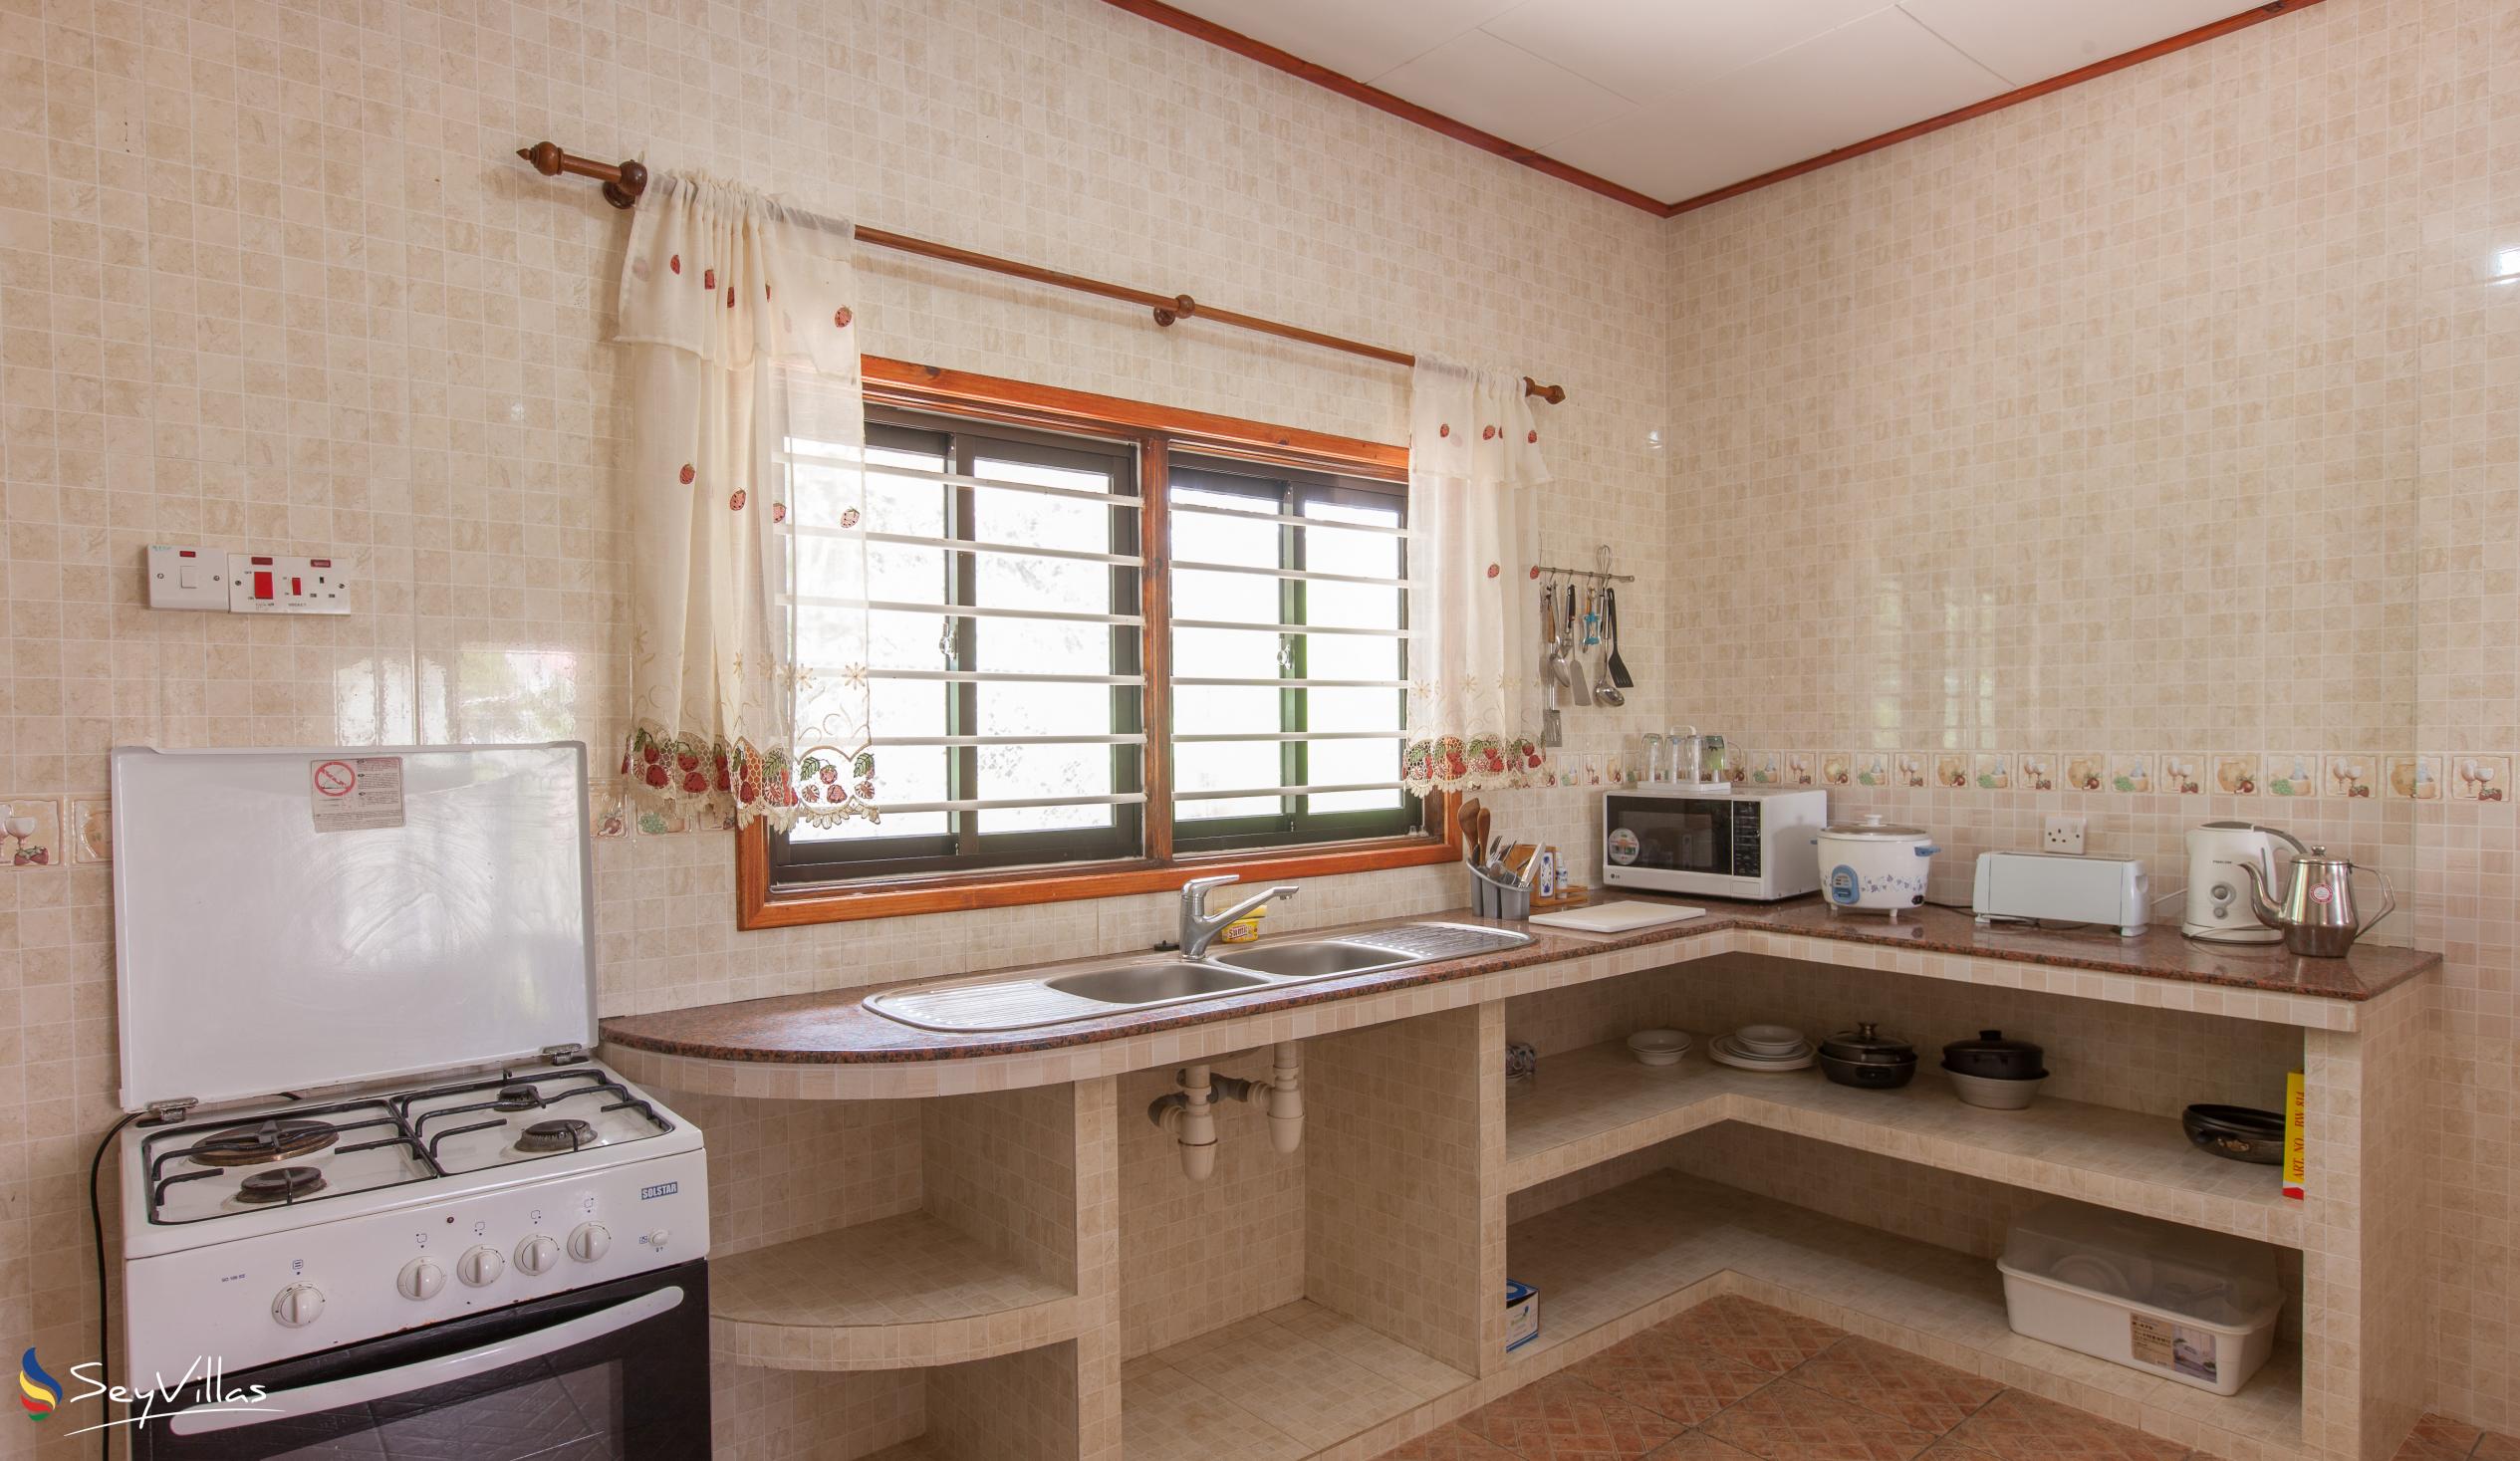 Photo 56: Zerof Self Catering  Apartments - 3-Bedroom Apartment - La Digue (Seychelles)